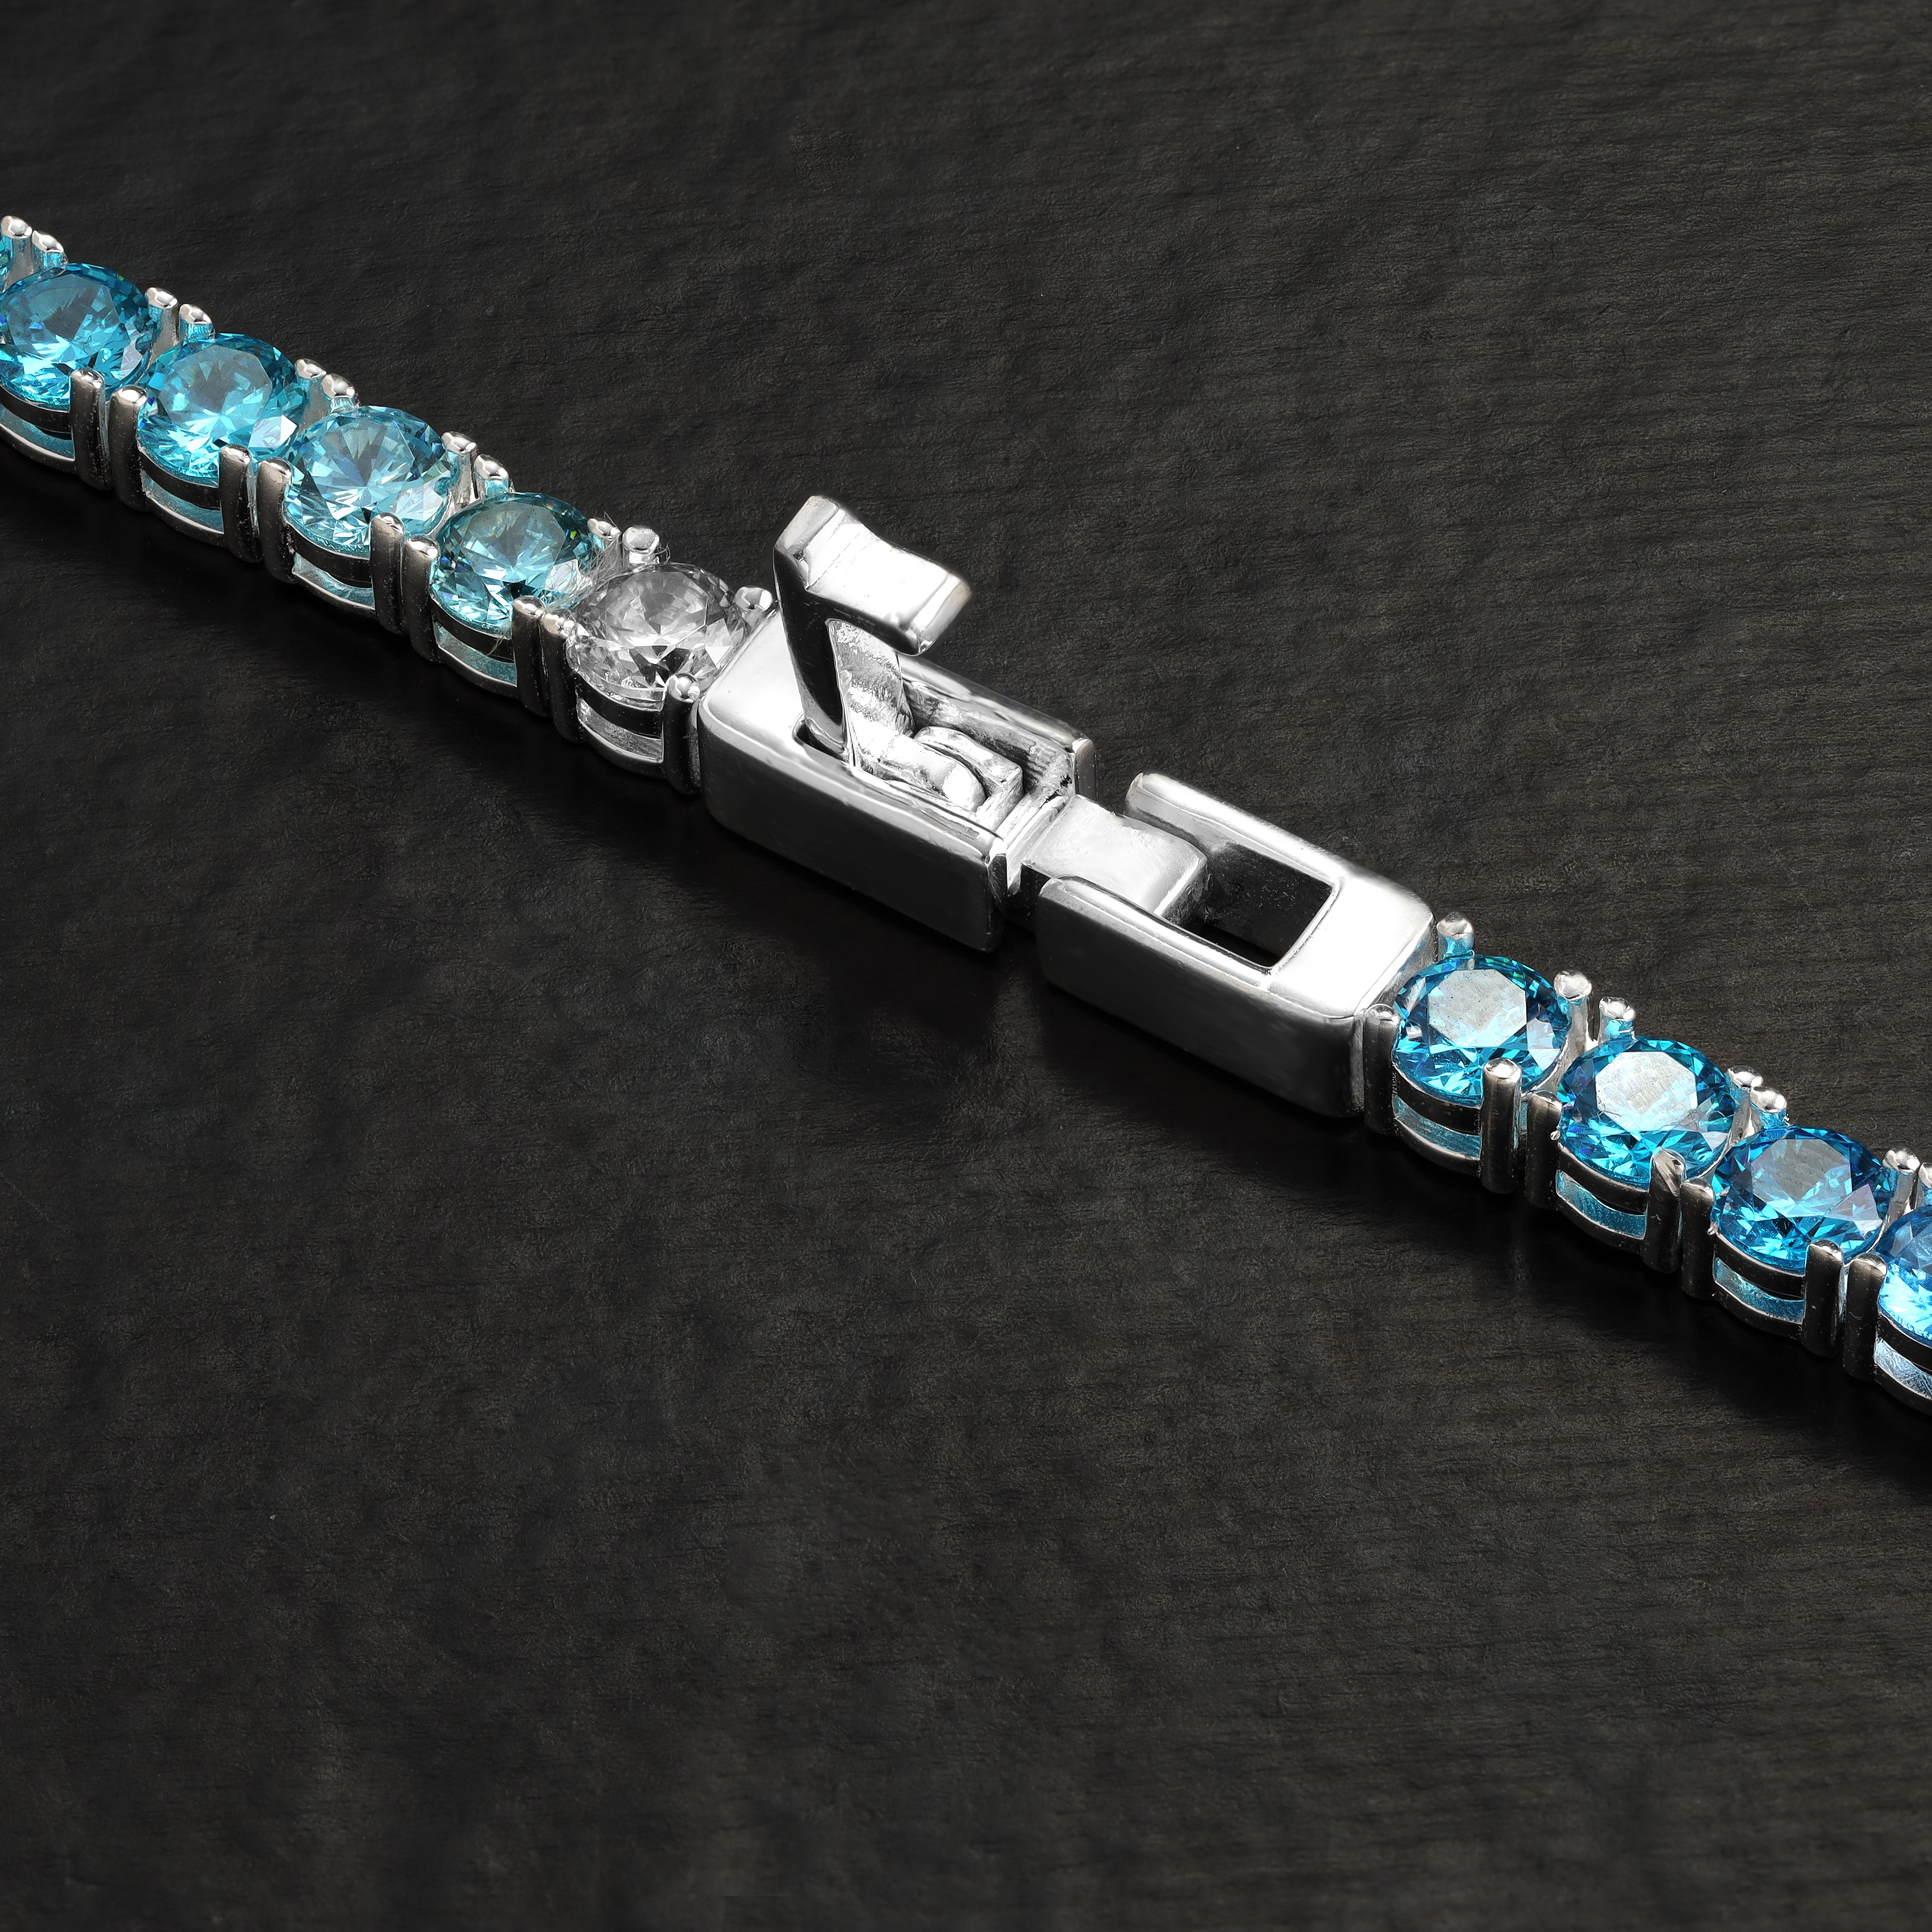 4mm Tennis Chain Kette Farbverlauf blau - 925 Sterling Silber - Taipan Schmuck